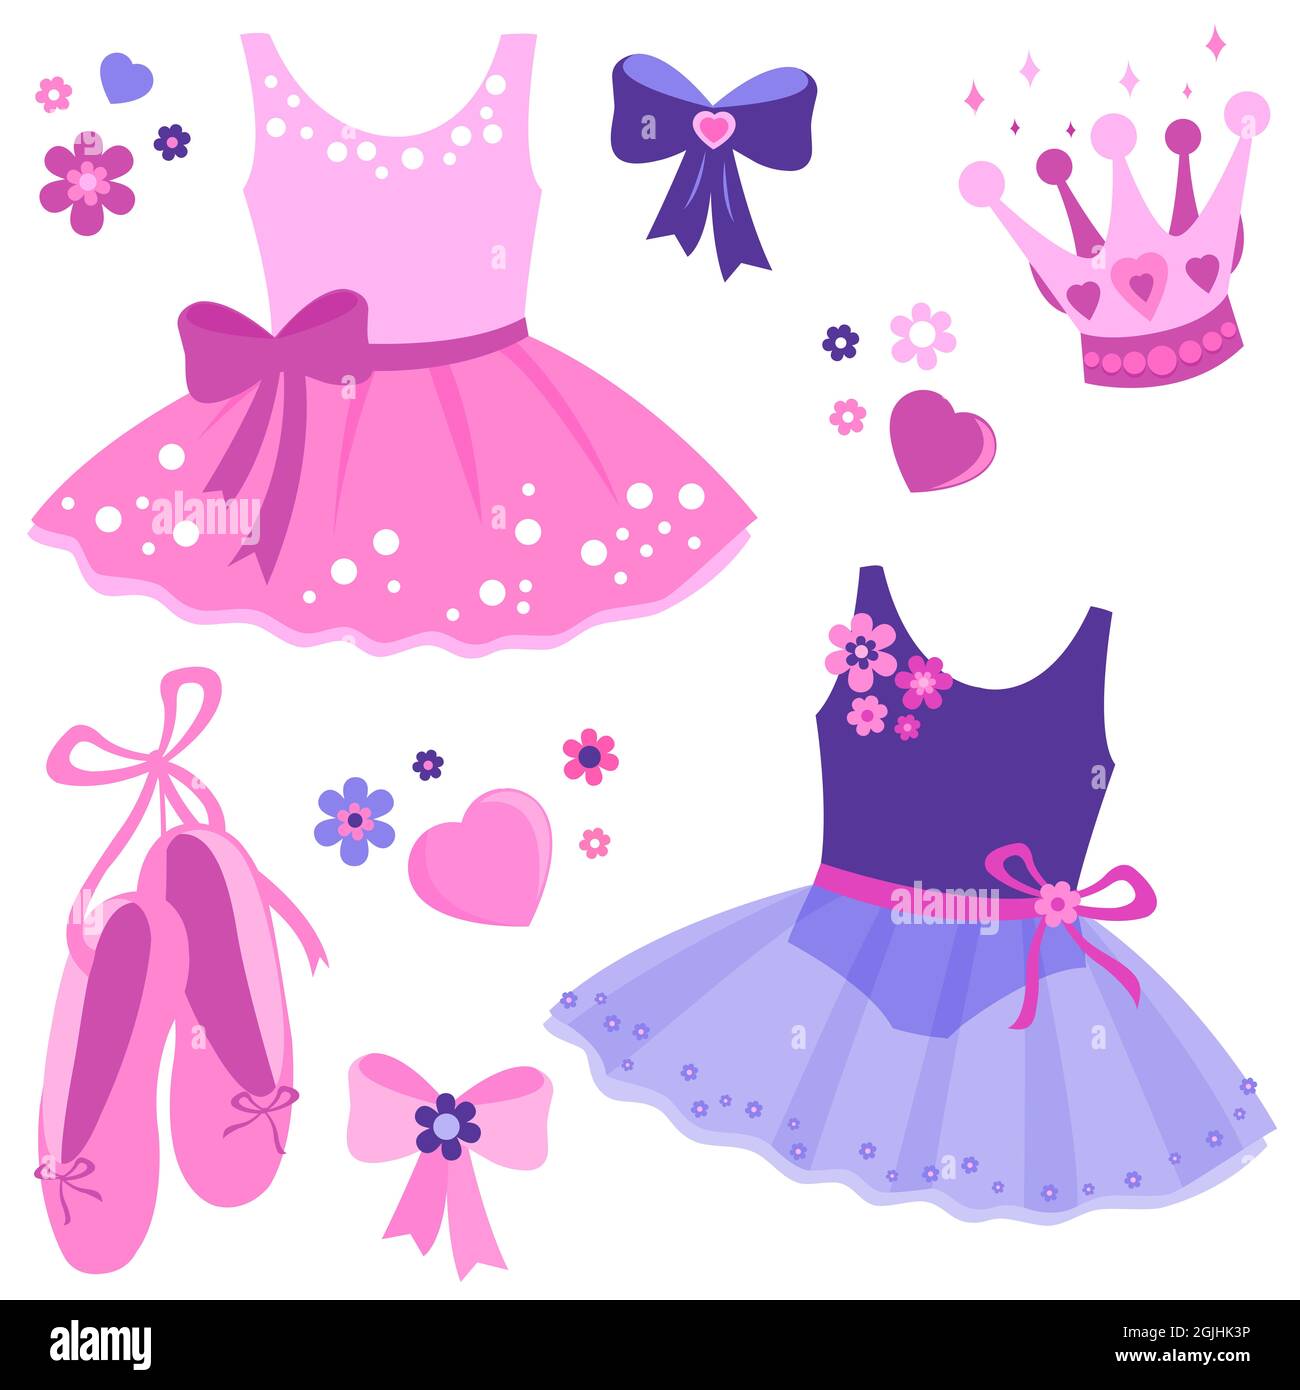 Ensemble d'illustrations de jolies tenues de danseuse de ballerine rose et pourpre, chaussures de ballet, rubans, couronnes et fleurs. Banque D'Images